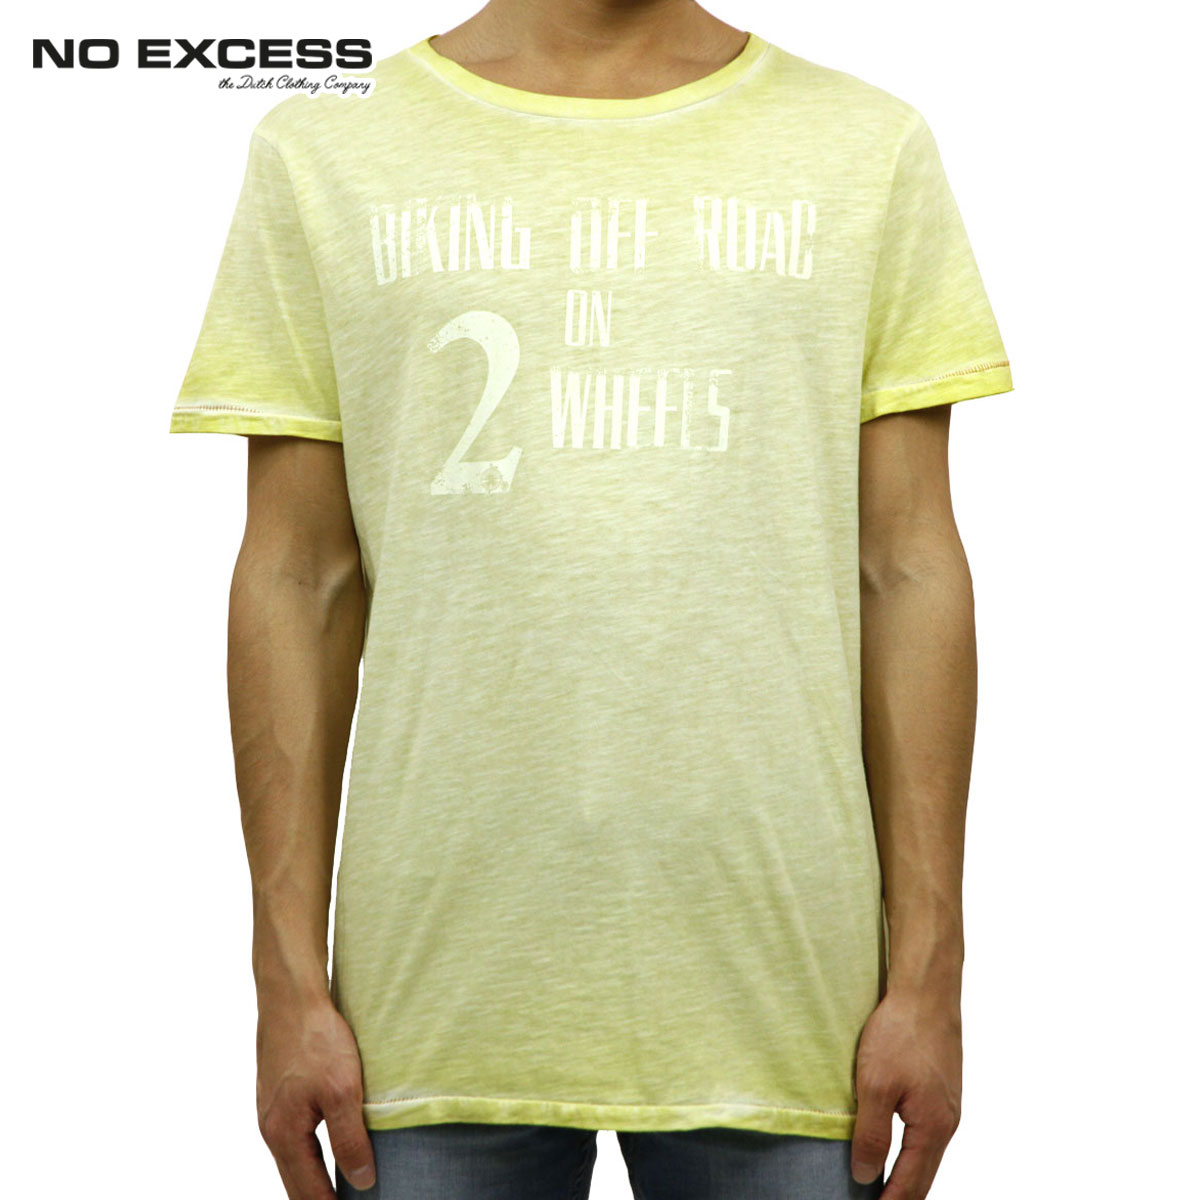 ノーエクセス Tシャツ 正規販売店 NO EXCESS 半袖Tシャツ T-shirt s/sl R-neck biking print 3601 1